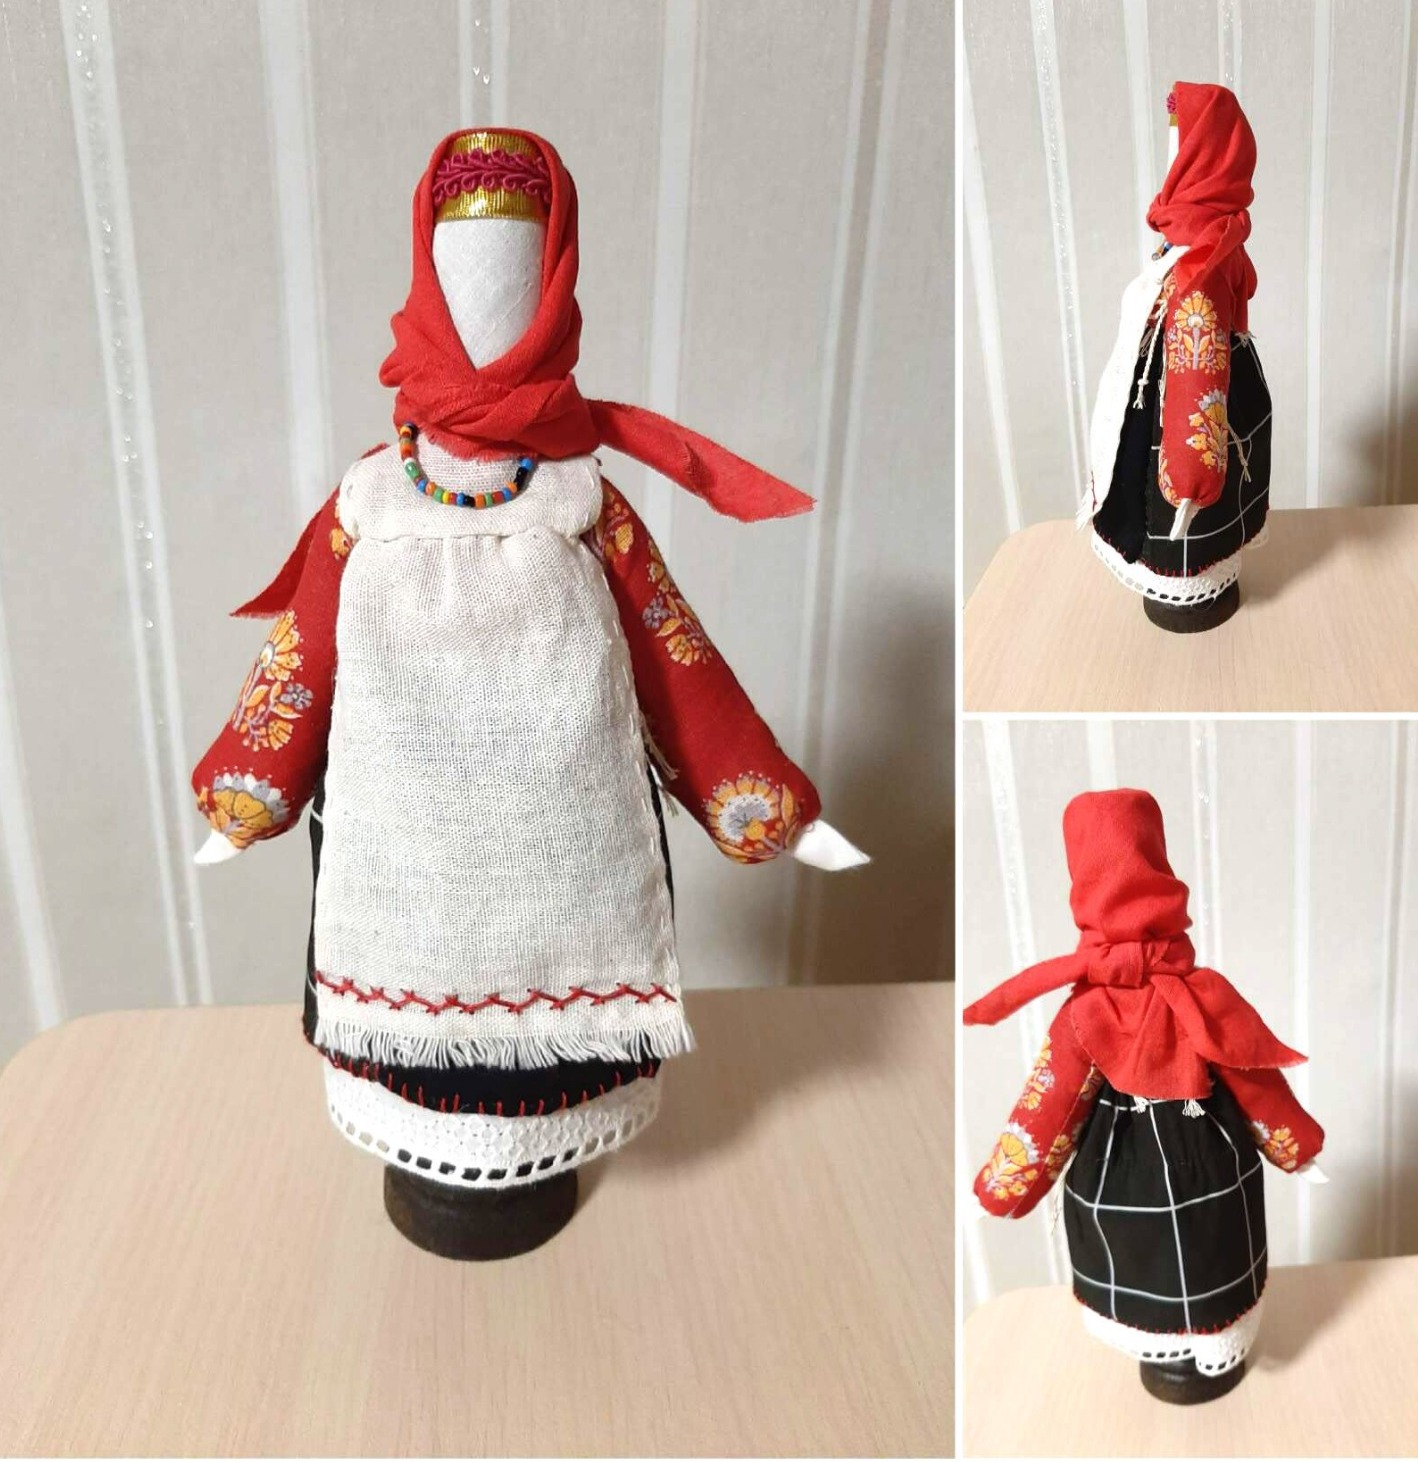 Кукла - столбушка, сделанная на основе деревянной палочки